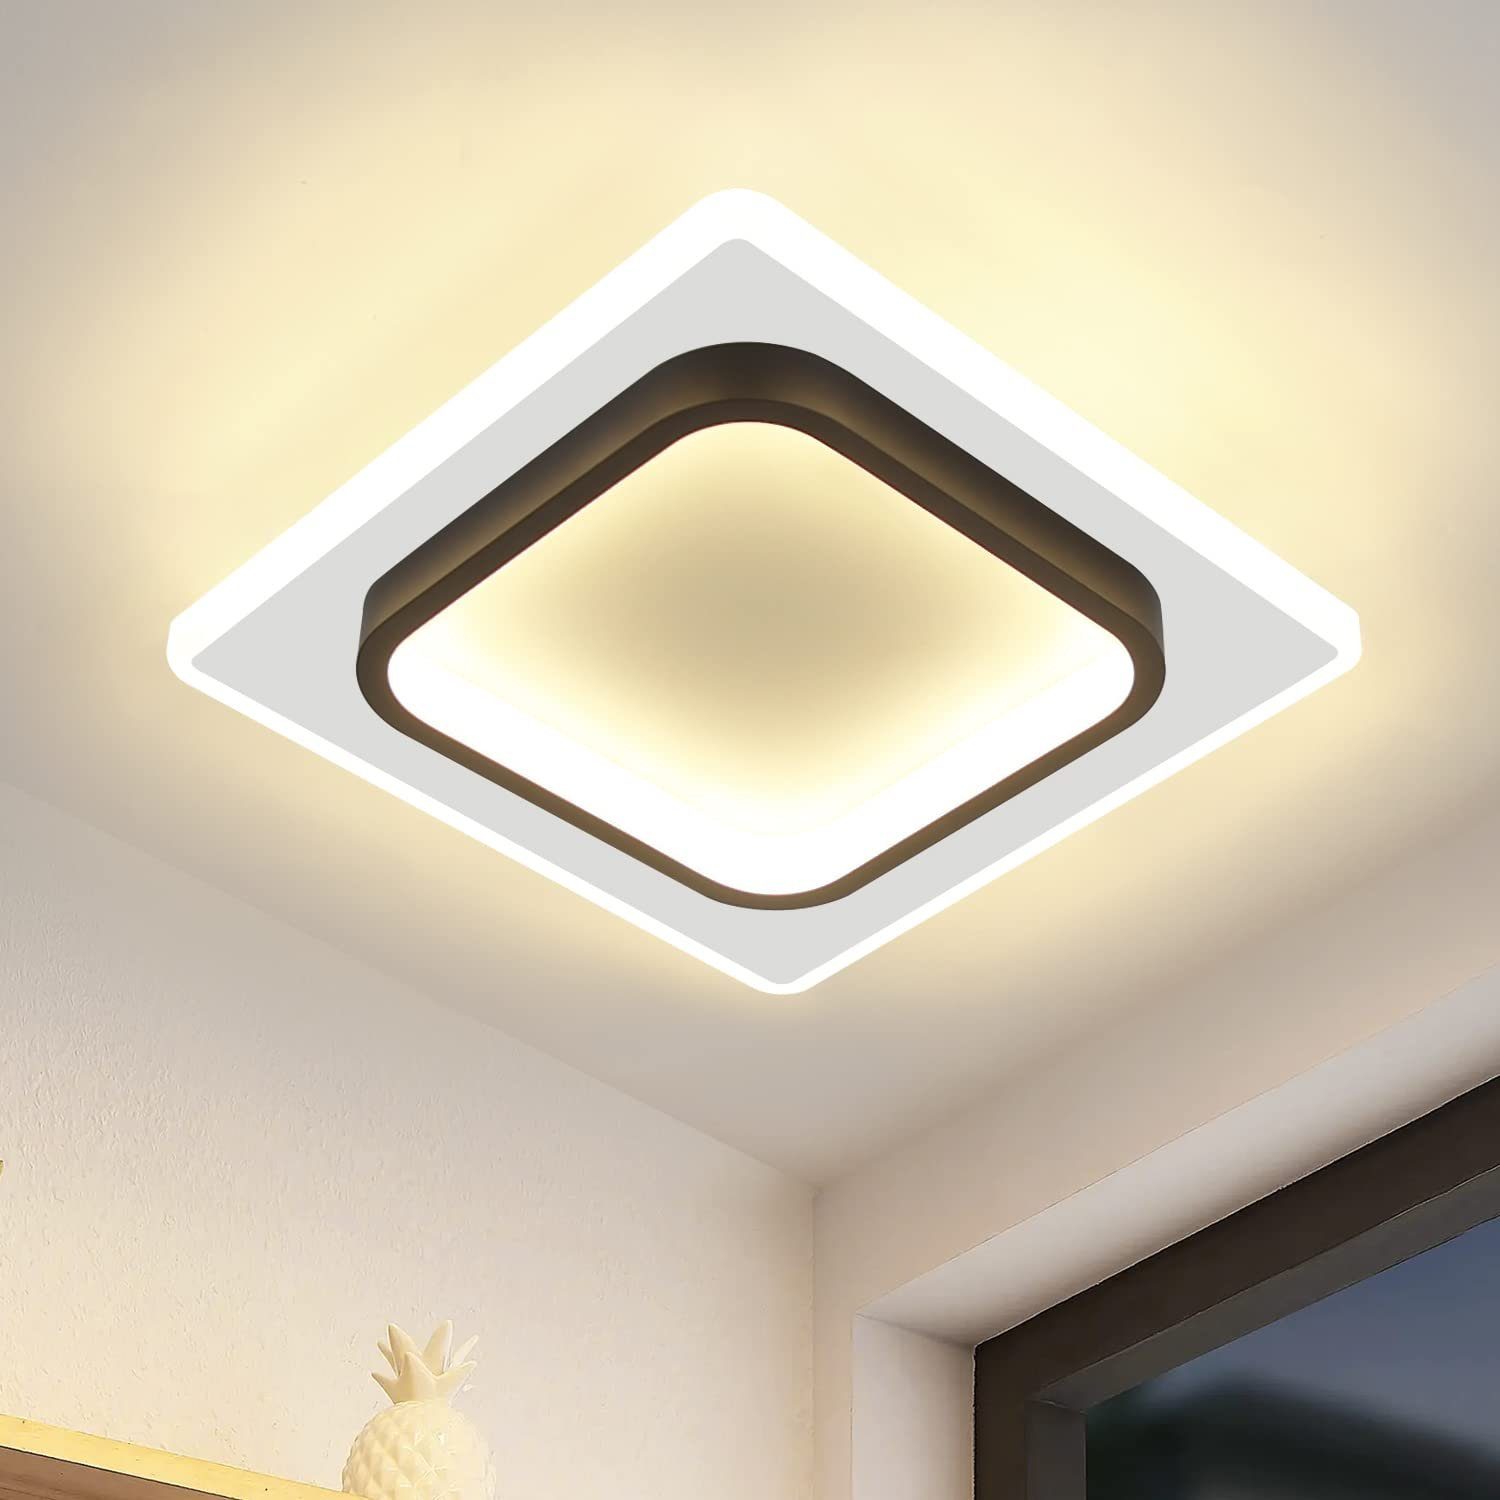 ZMH LED Deckenleuchte Modern Schwarz Weiß Design Acryl Wohnzimmerlampe, LED fest integriert, Warmweiß, Quadrat, 16W